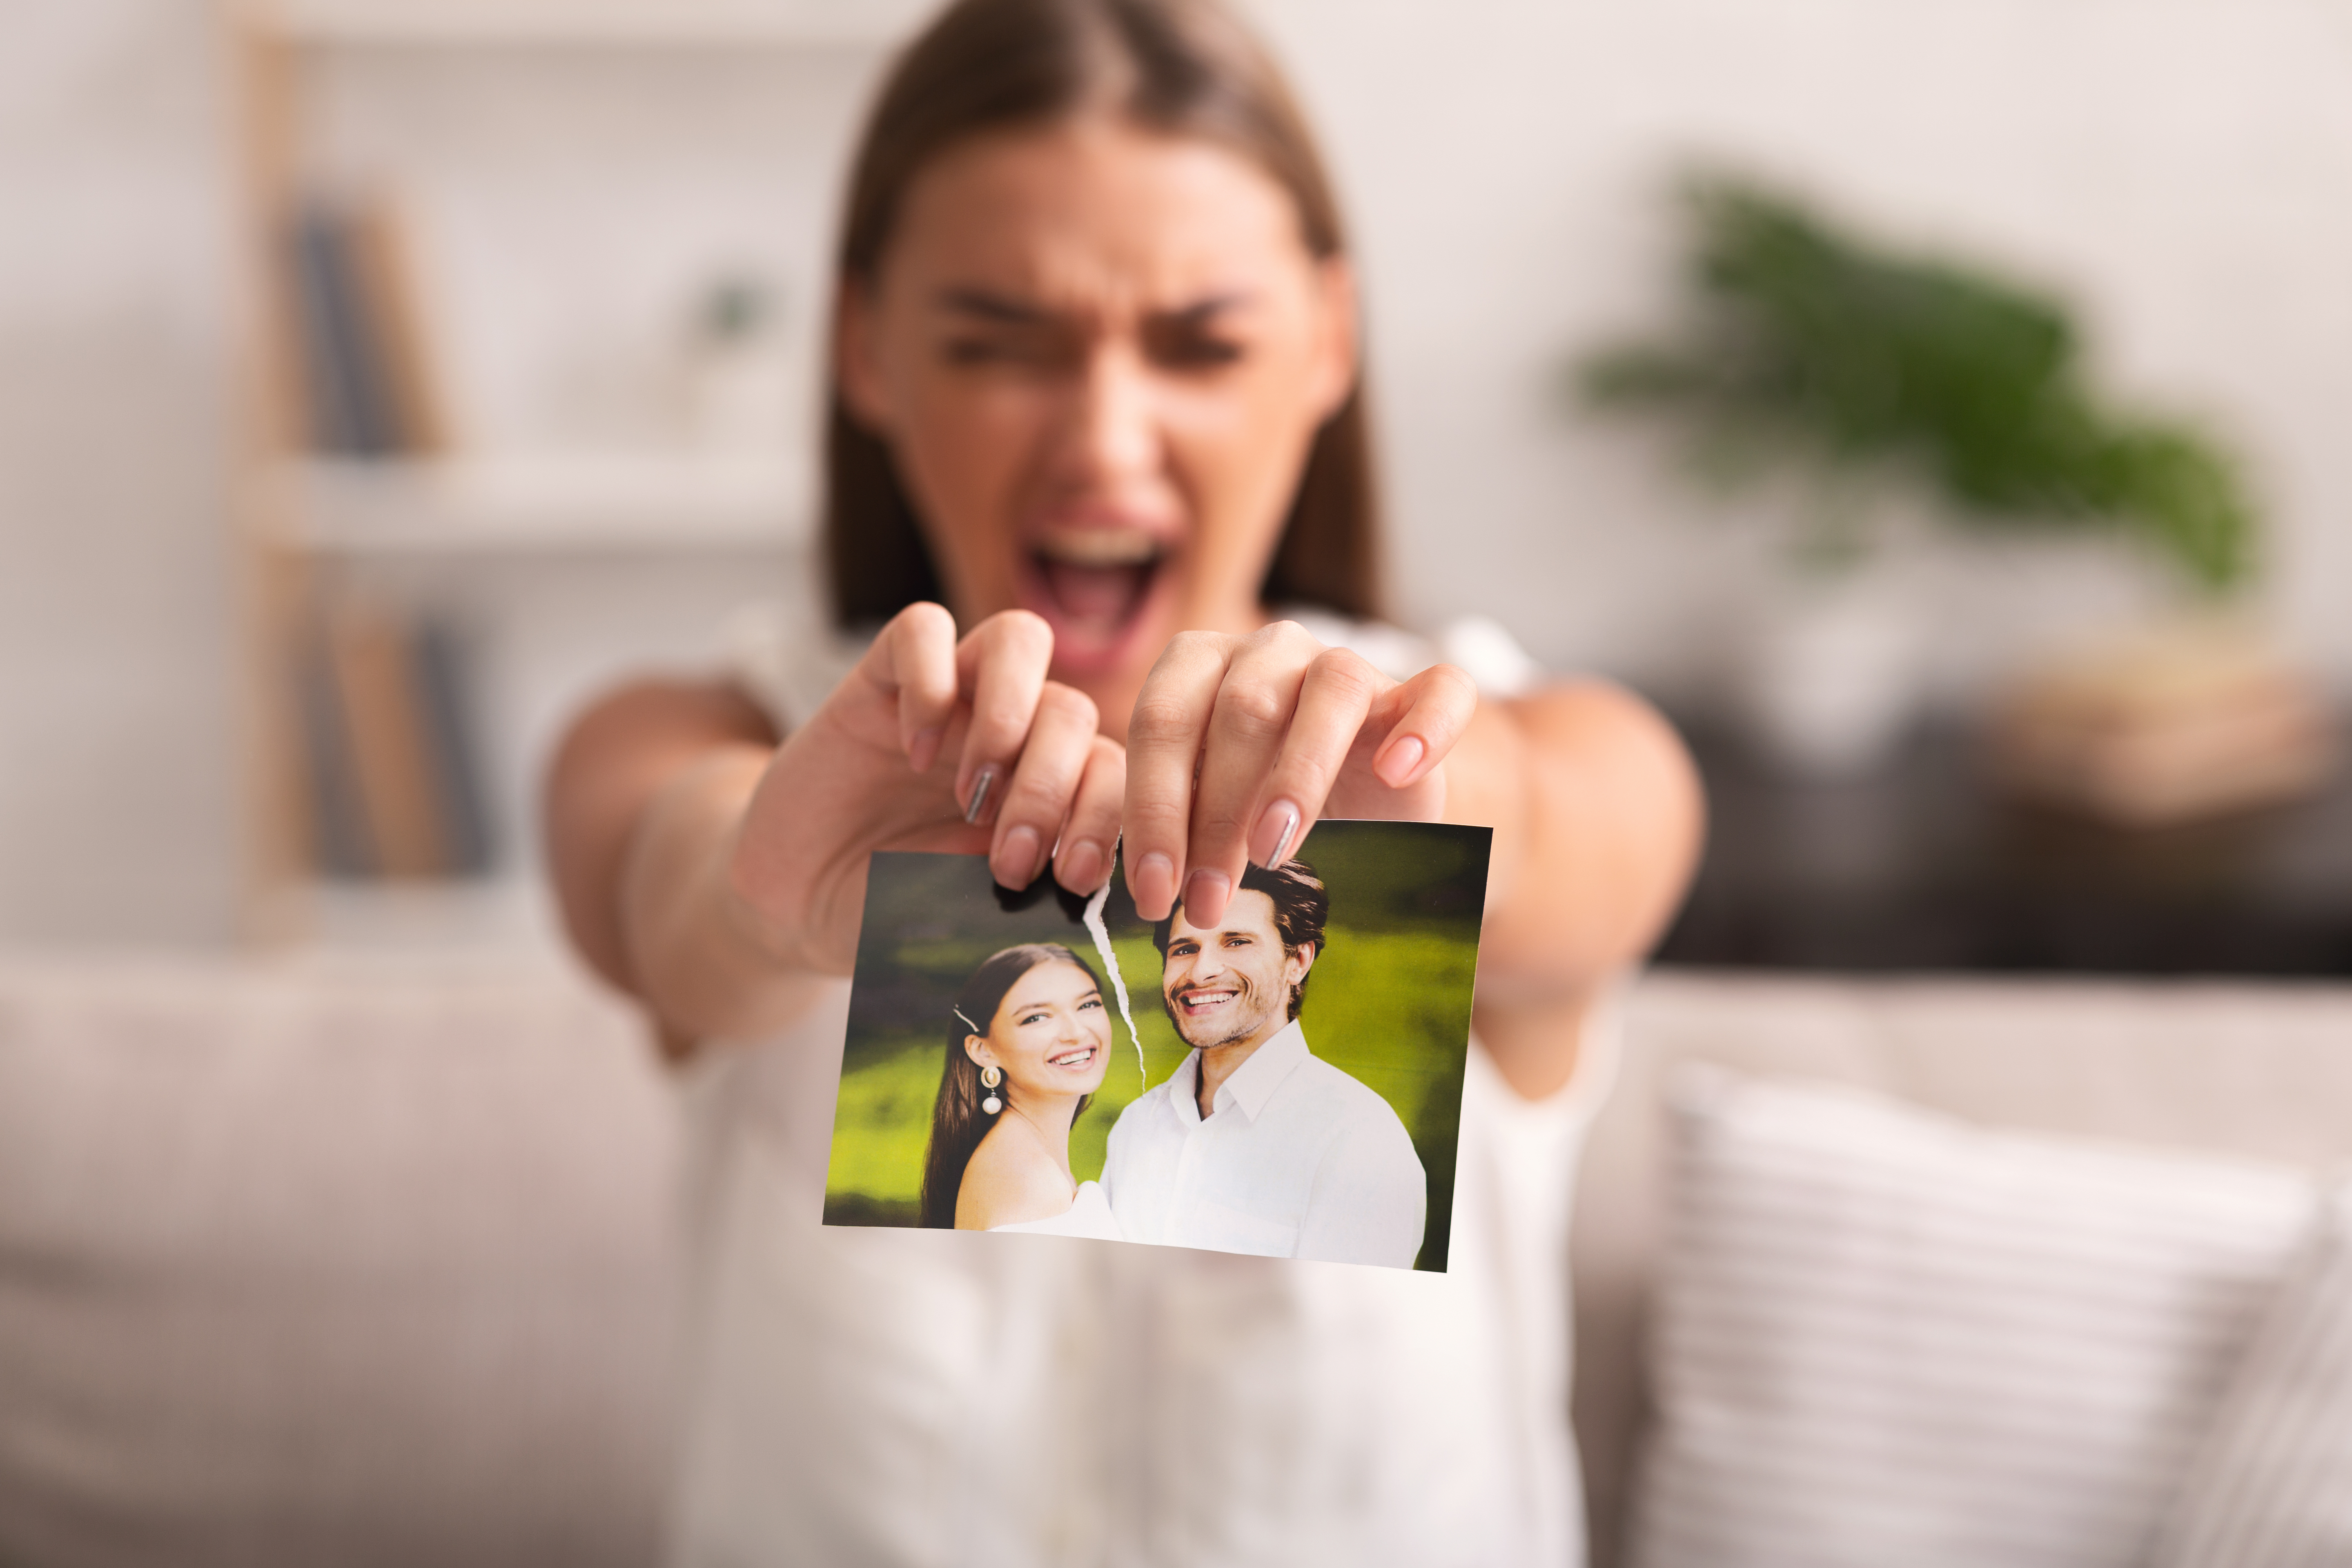 Mujer rompiendo una foto de ella y un hombre | Foto: Shutterstock